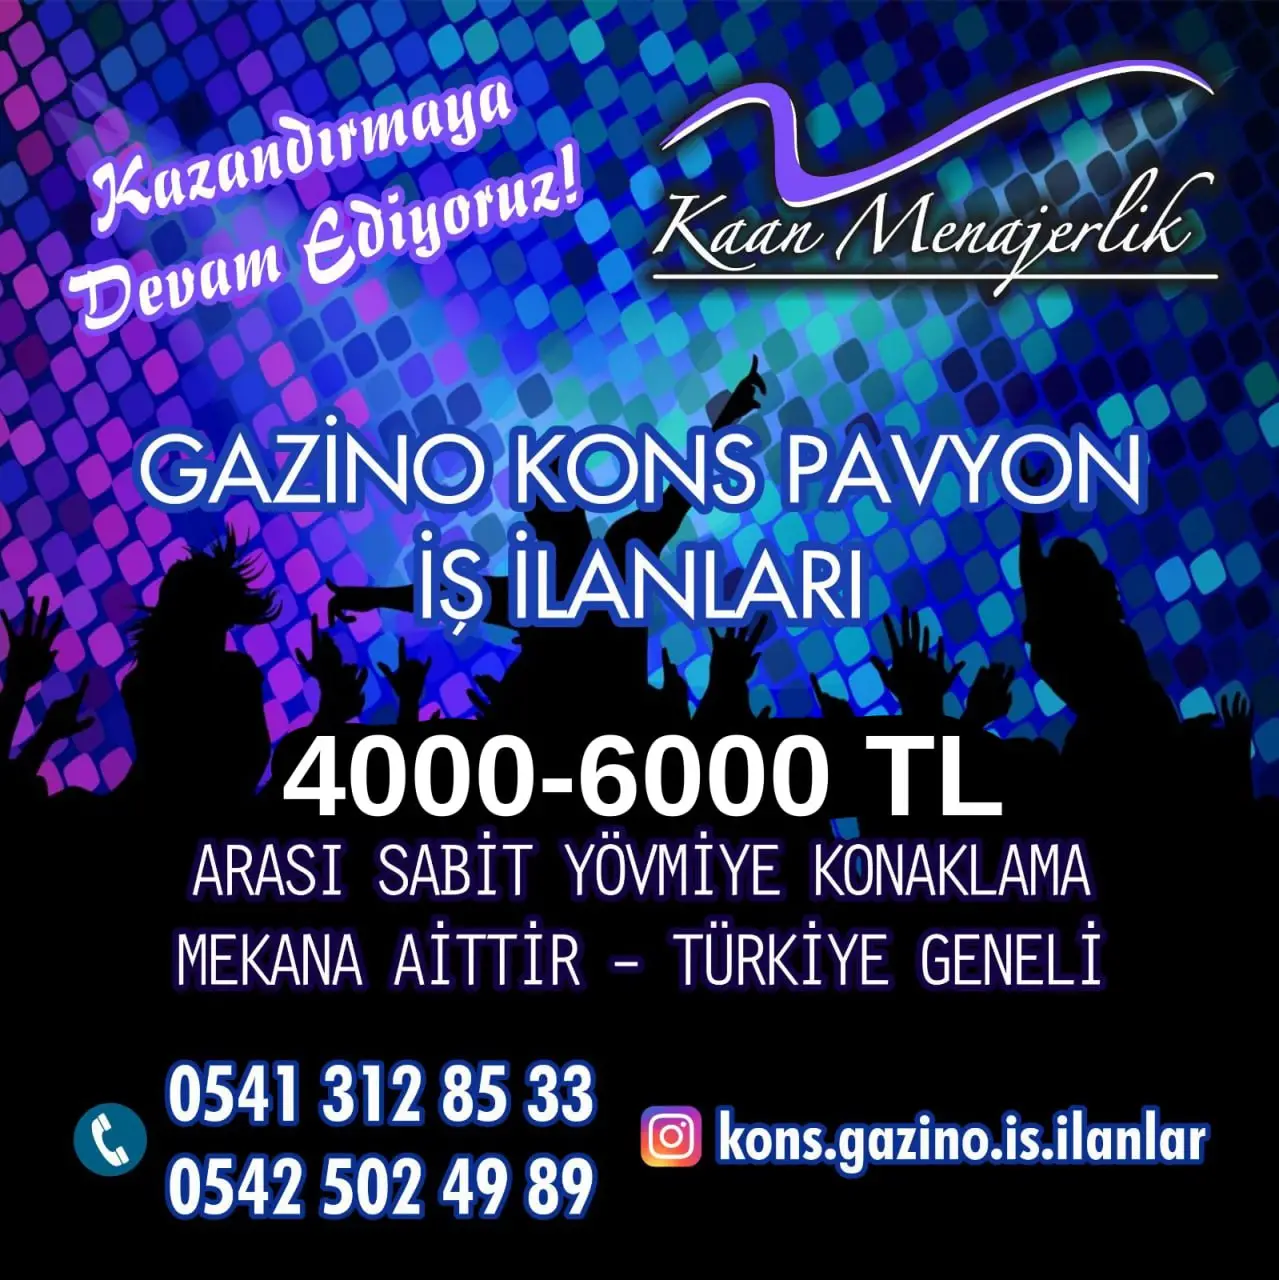 Bitlis Kons iş ilanları